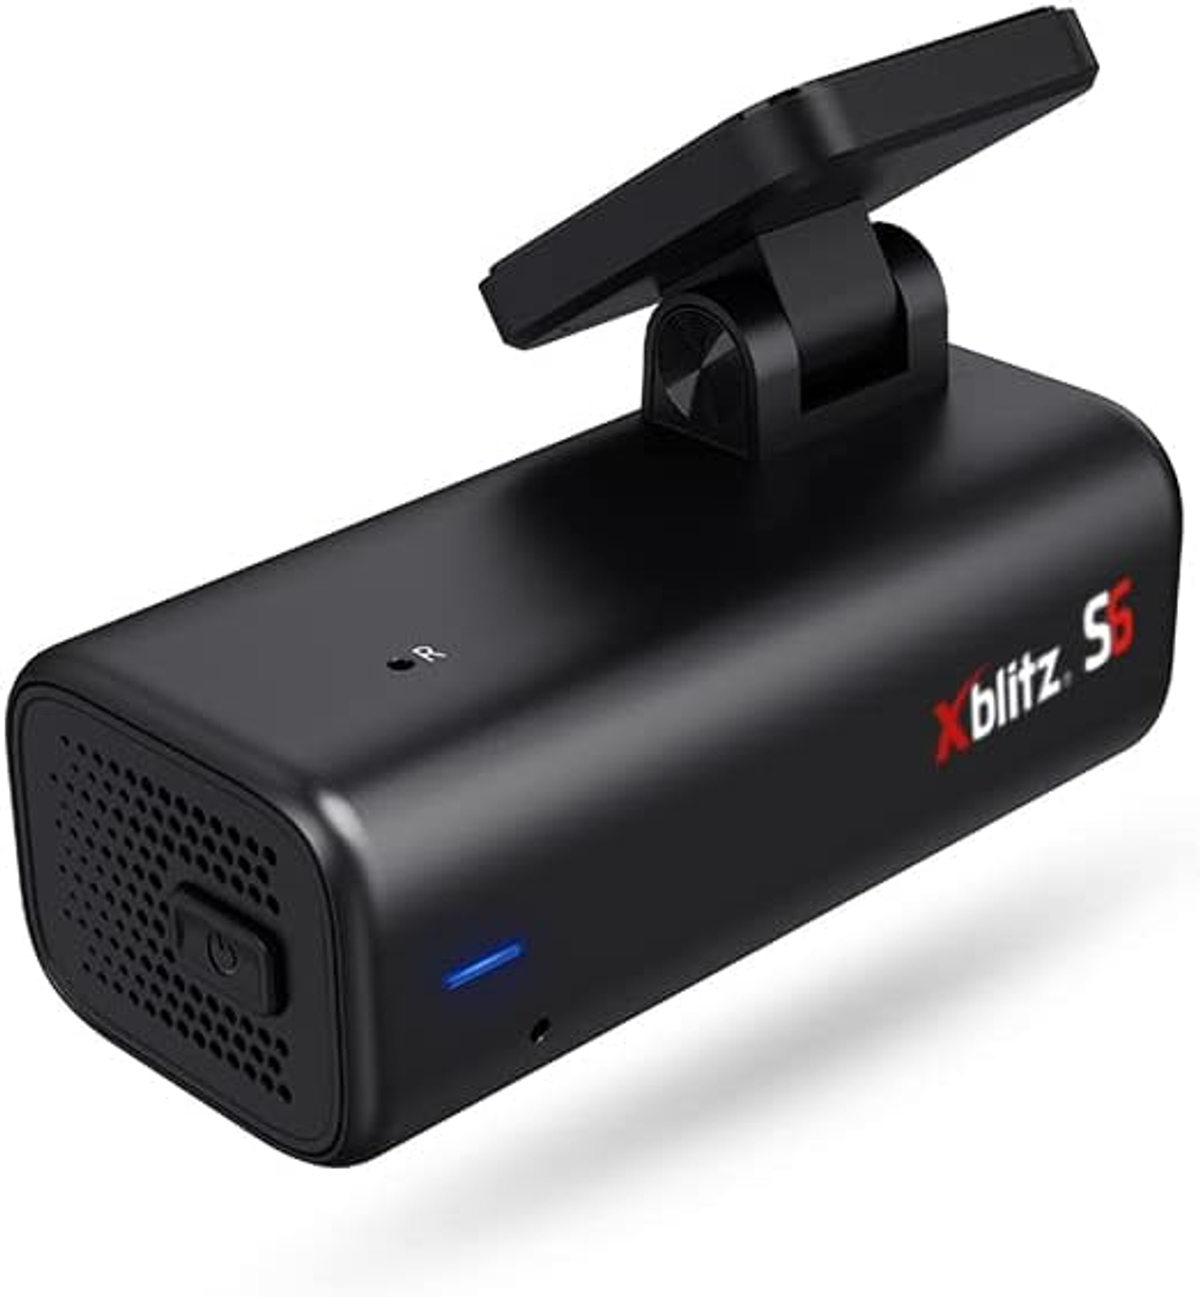 XBLITZ S6 Dashcam Display